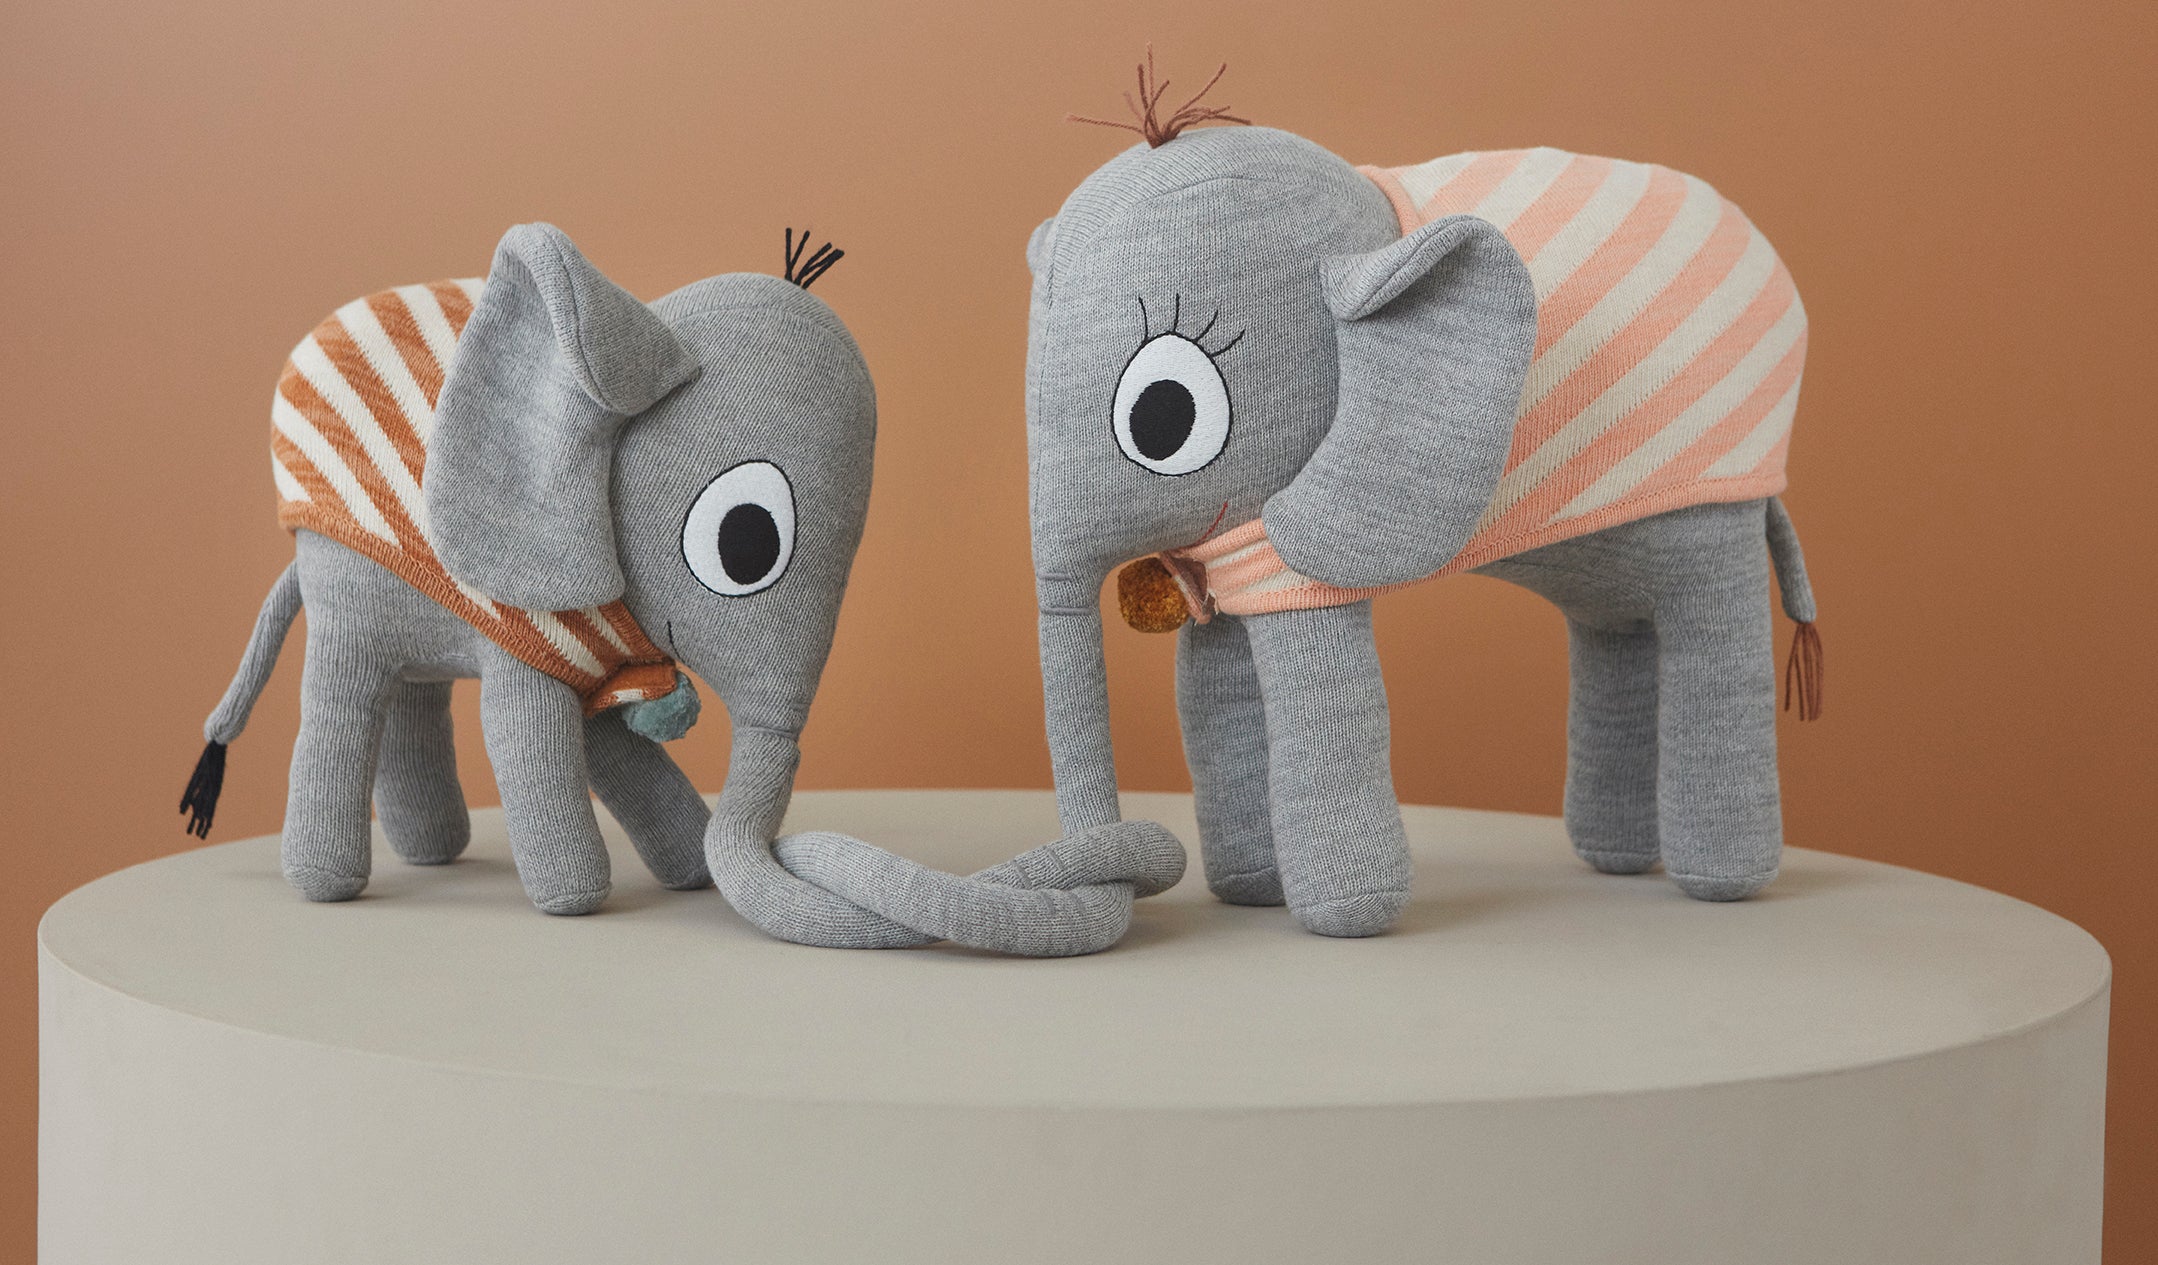 Kuscheltier "Ramboline Elephant - Grey"